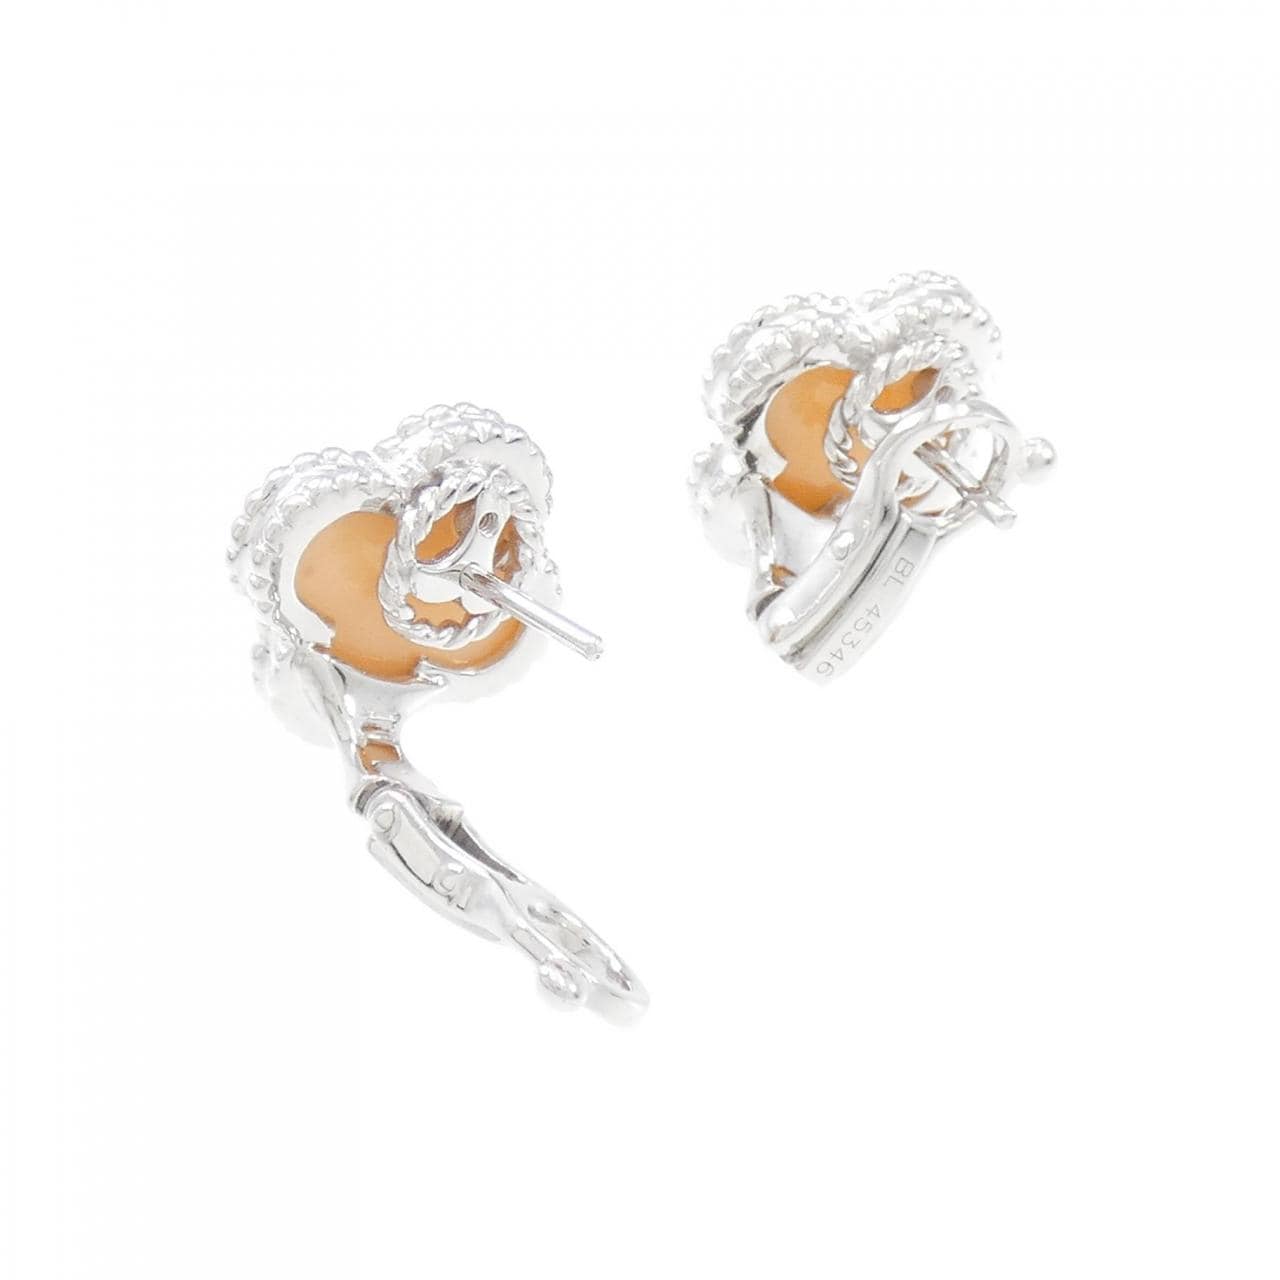 Van Cleef & Arpels Alhambra earrings